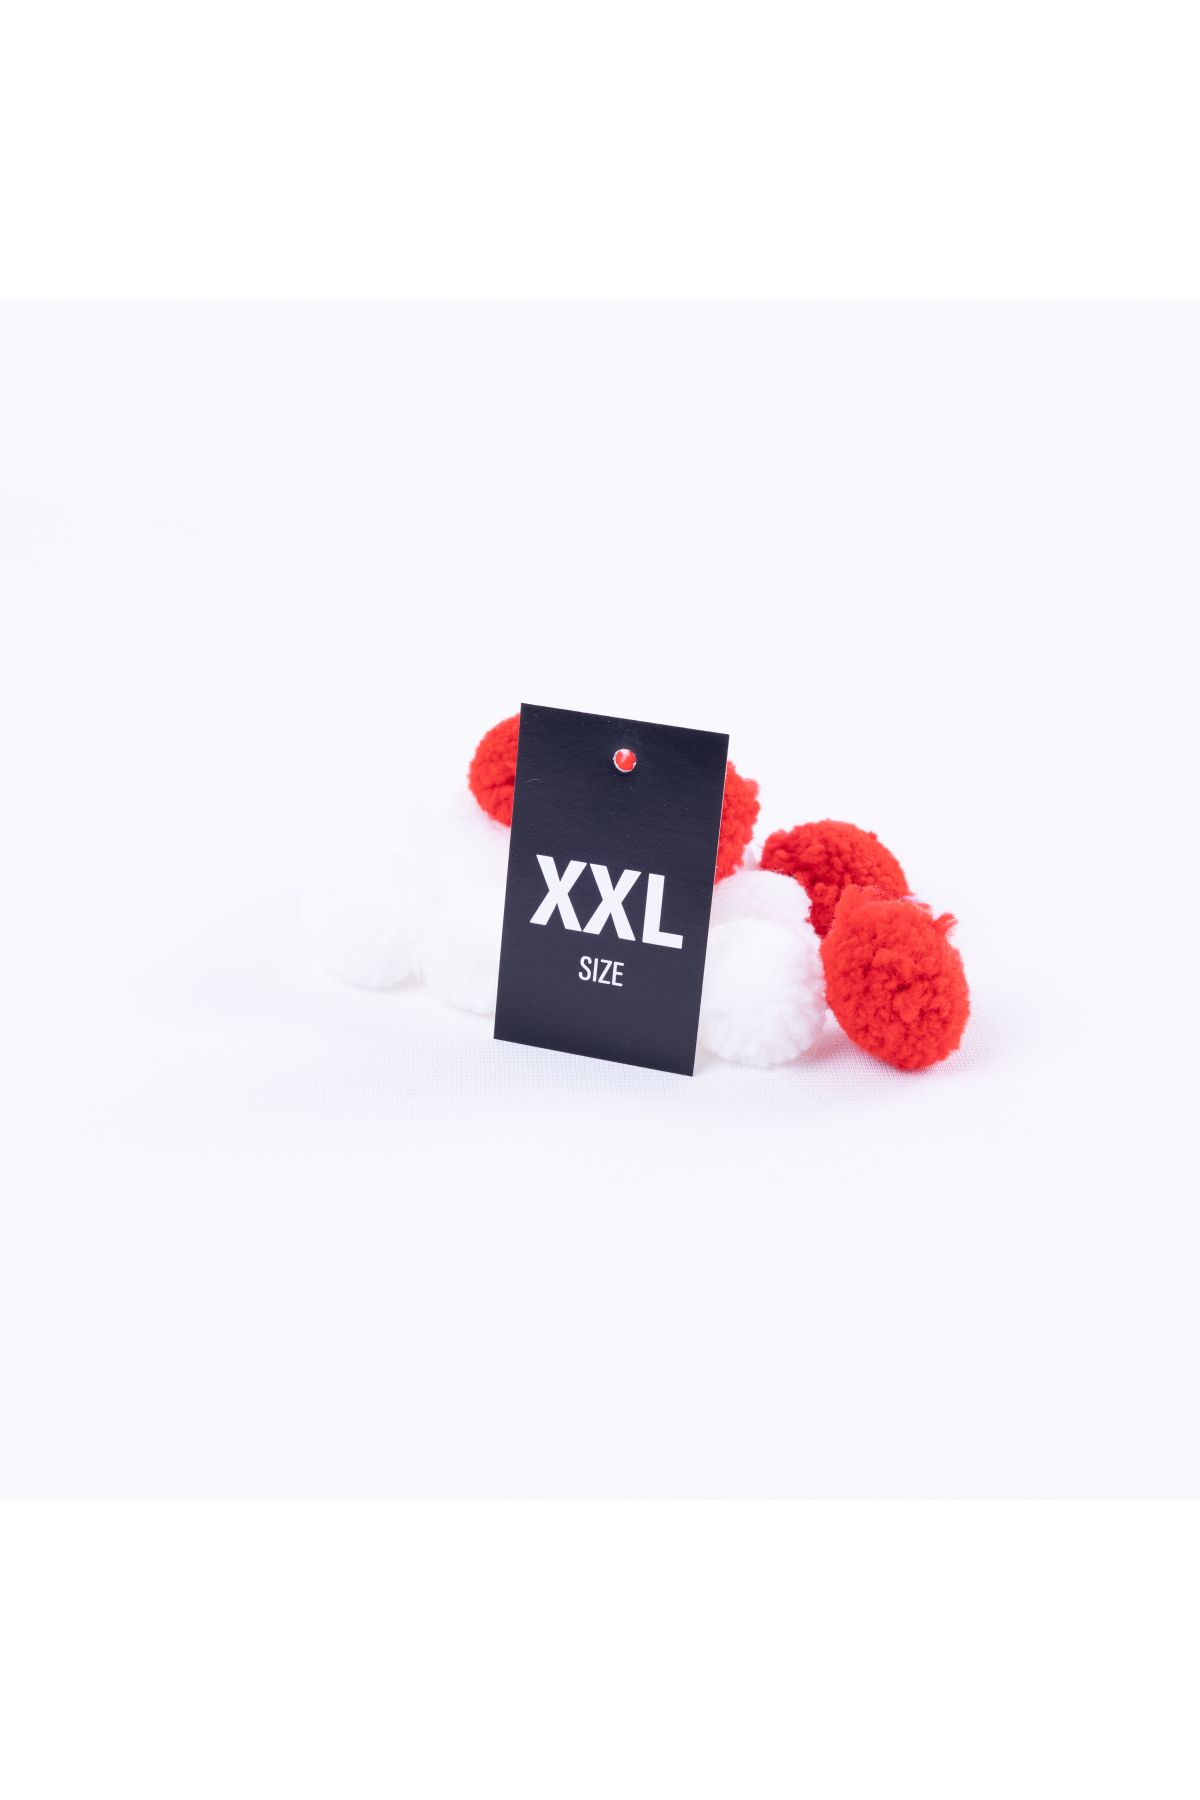 Bimotif Xxl Delikli, Siyah Beden Etiketi Seti, 4 X 6 Cm 100 Adet